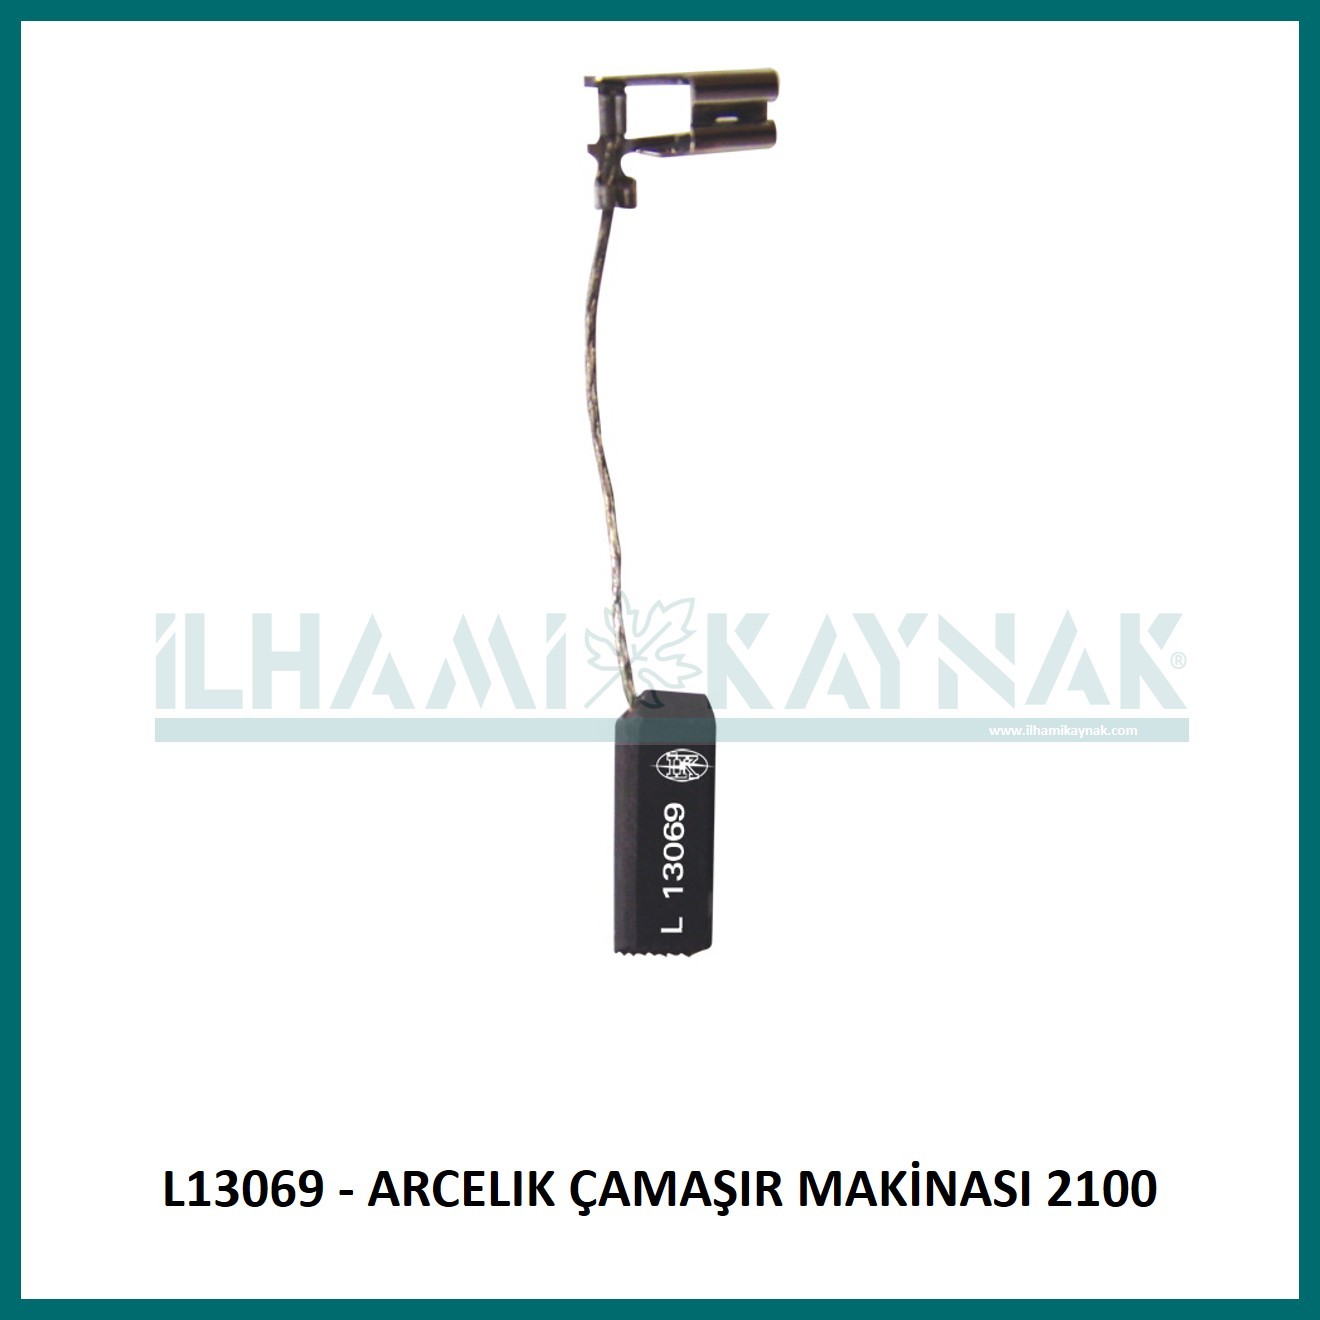 L13069 - ARCELIK ÇAMAŞIR MAKİNASI 2100 - 6,3*8*22 mm - Minimum Satın Alım: 10 Adet.